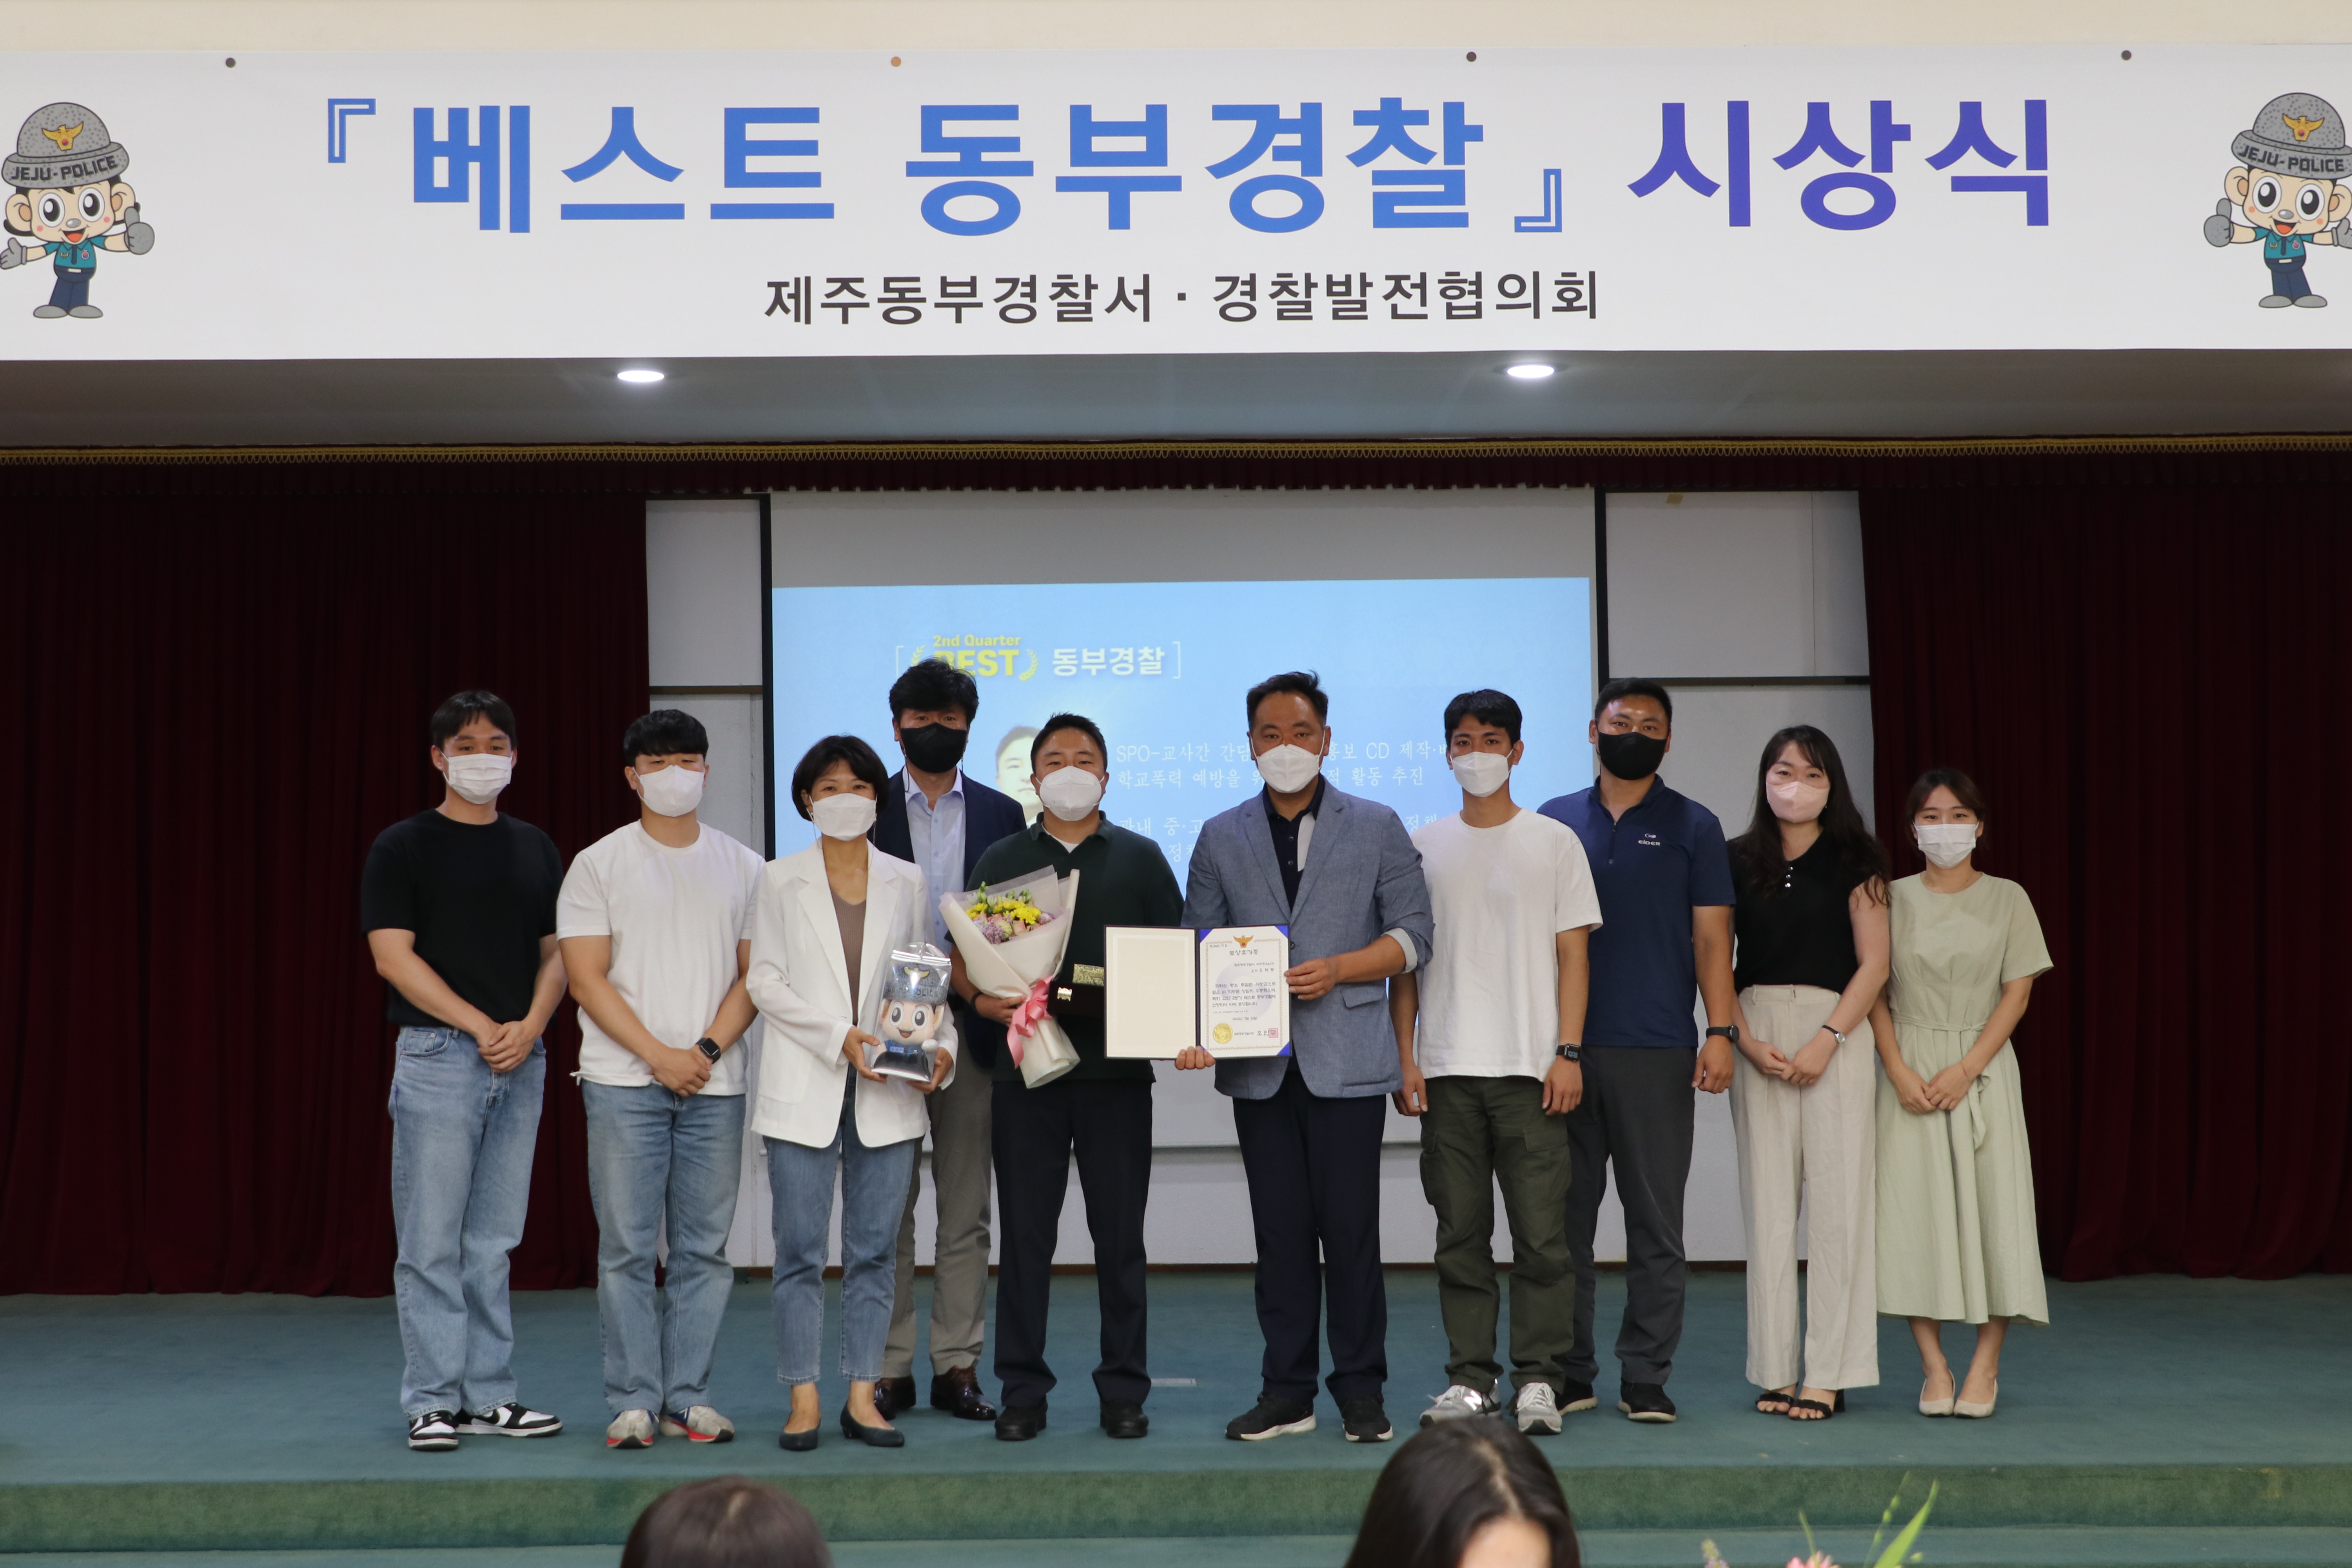 동부서, `22년 2분기 베스트 동부경찰 시상식 개최 